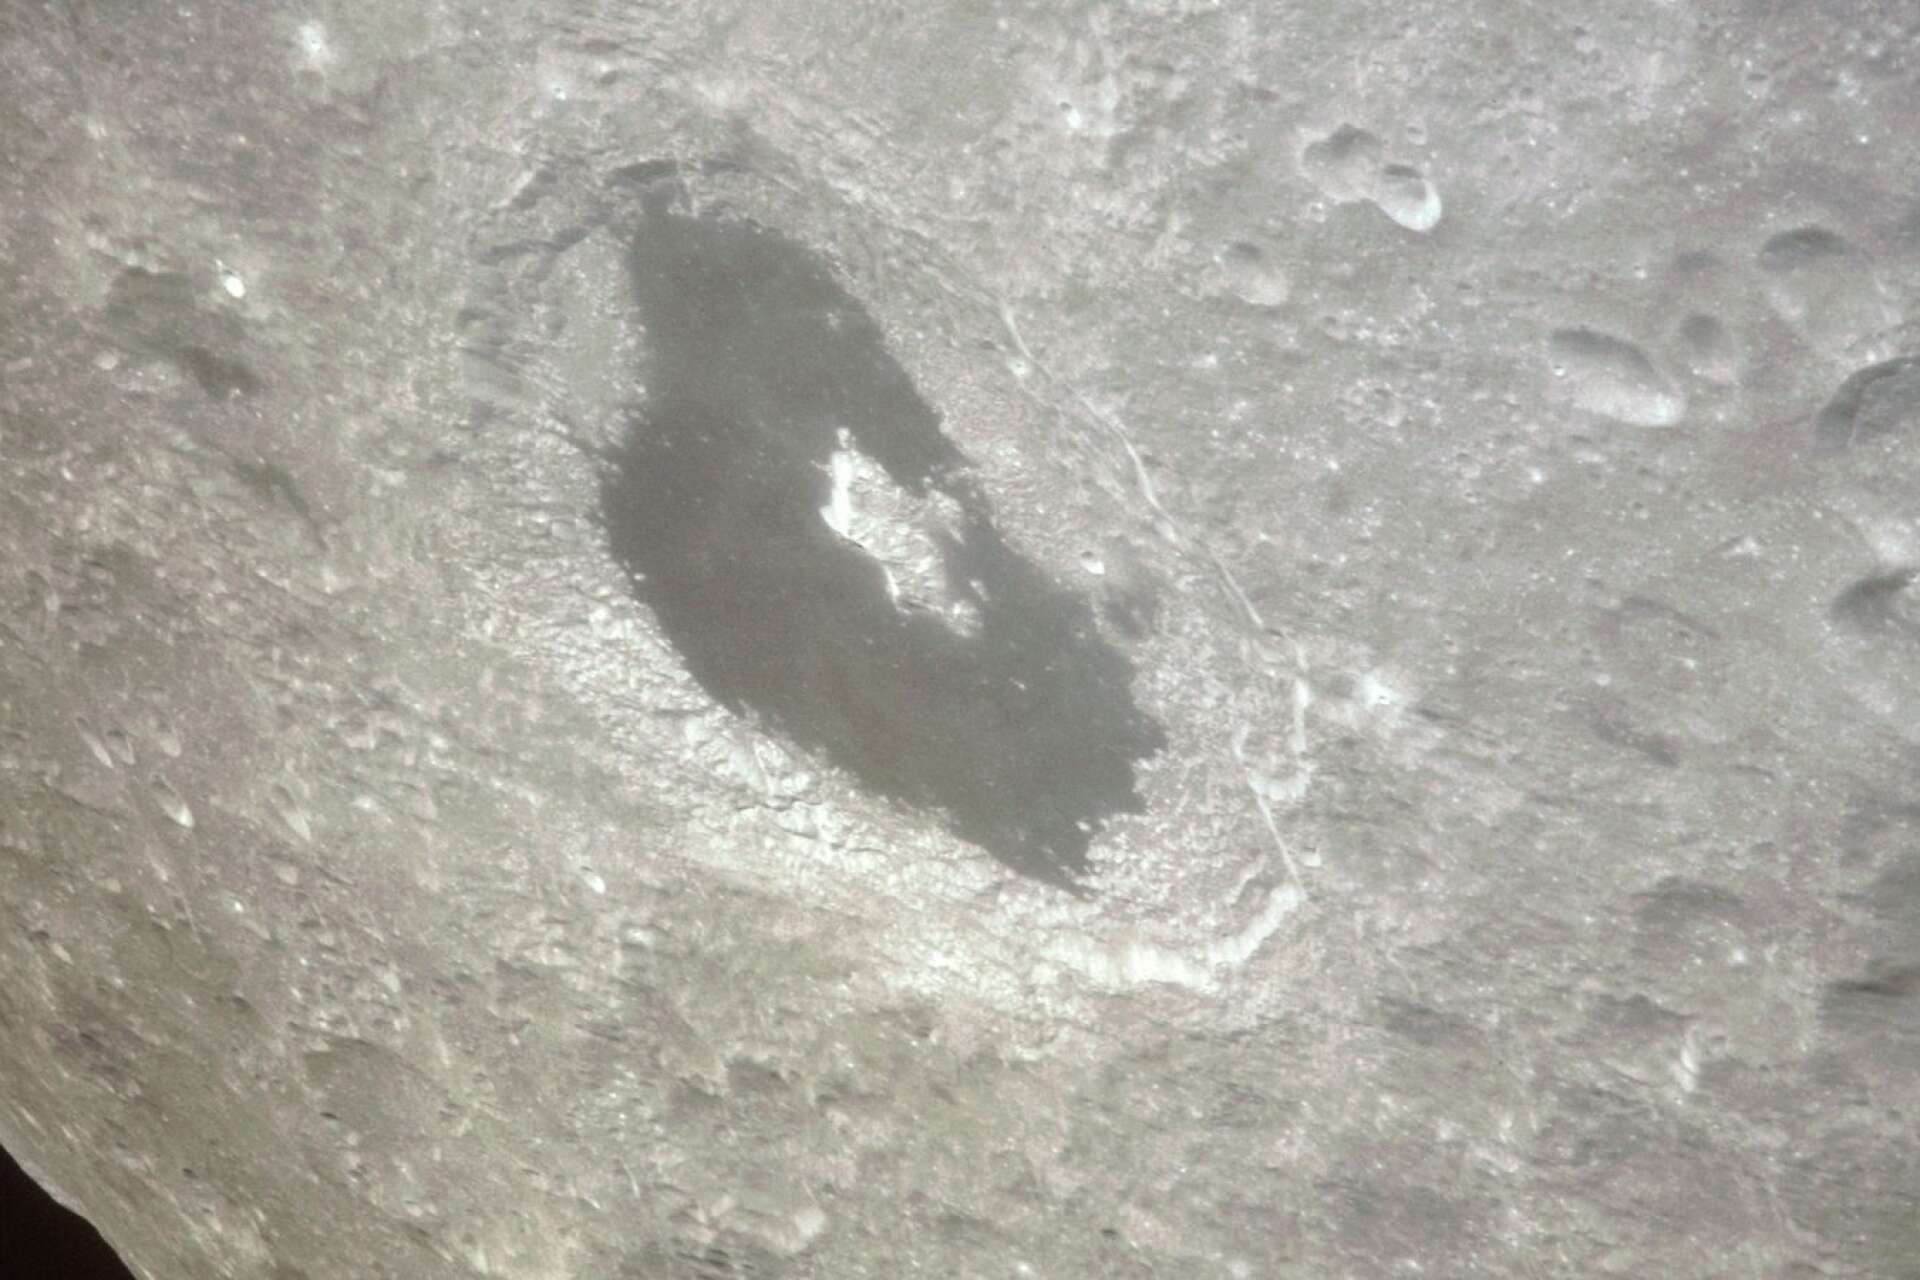 Tsiolkovskijkratern på månens baksida.